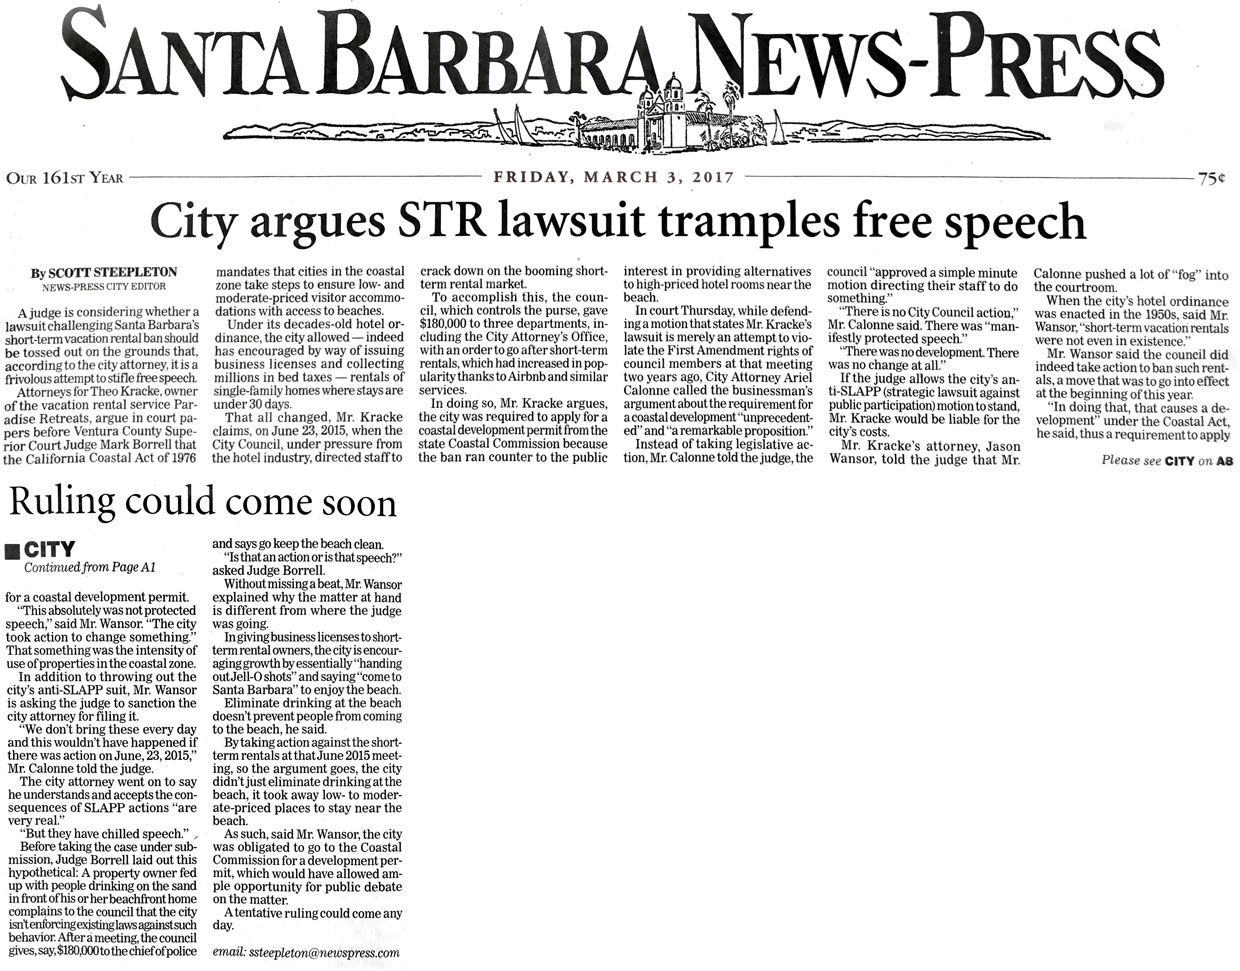 City argues Short Term Rental lawsuit tramples free speech